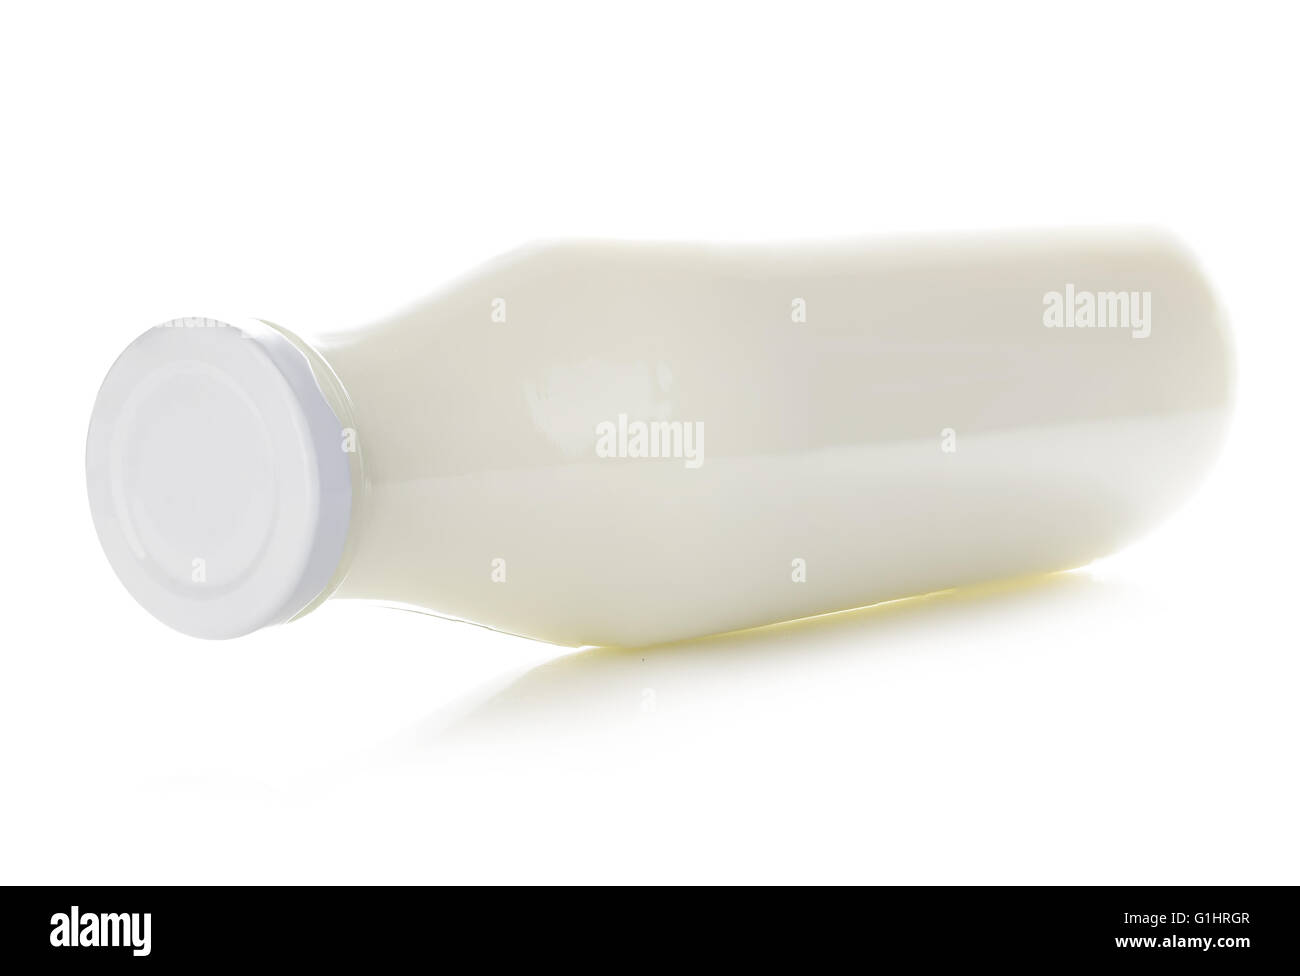 Bottle of milk close-up isolated on white background. Stock Photo